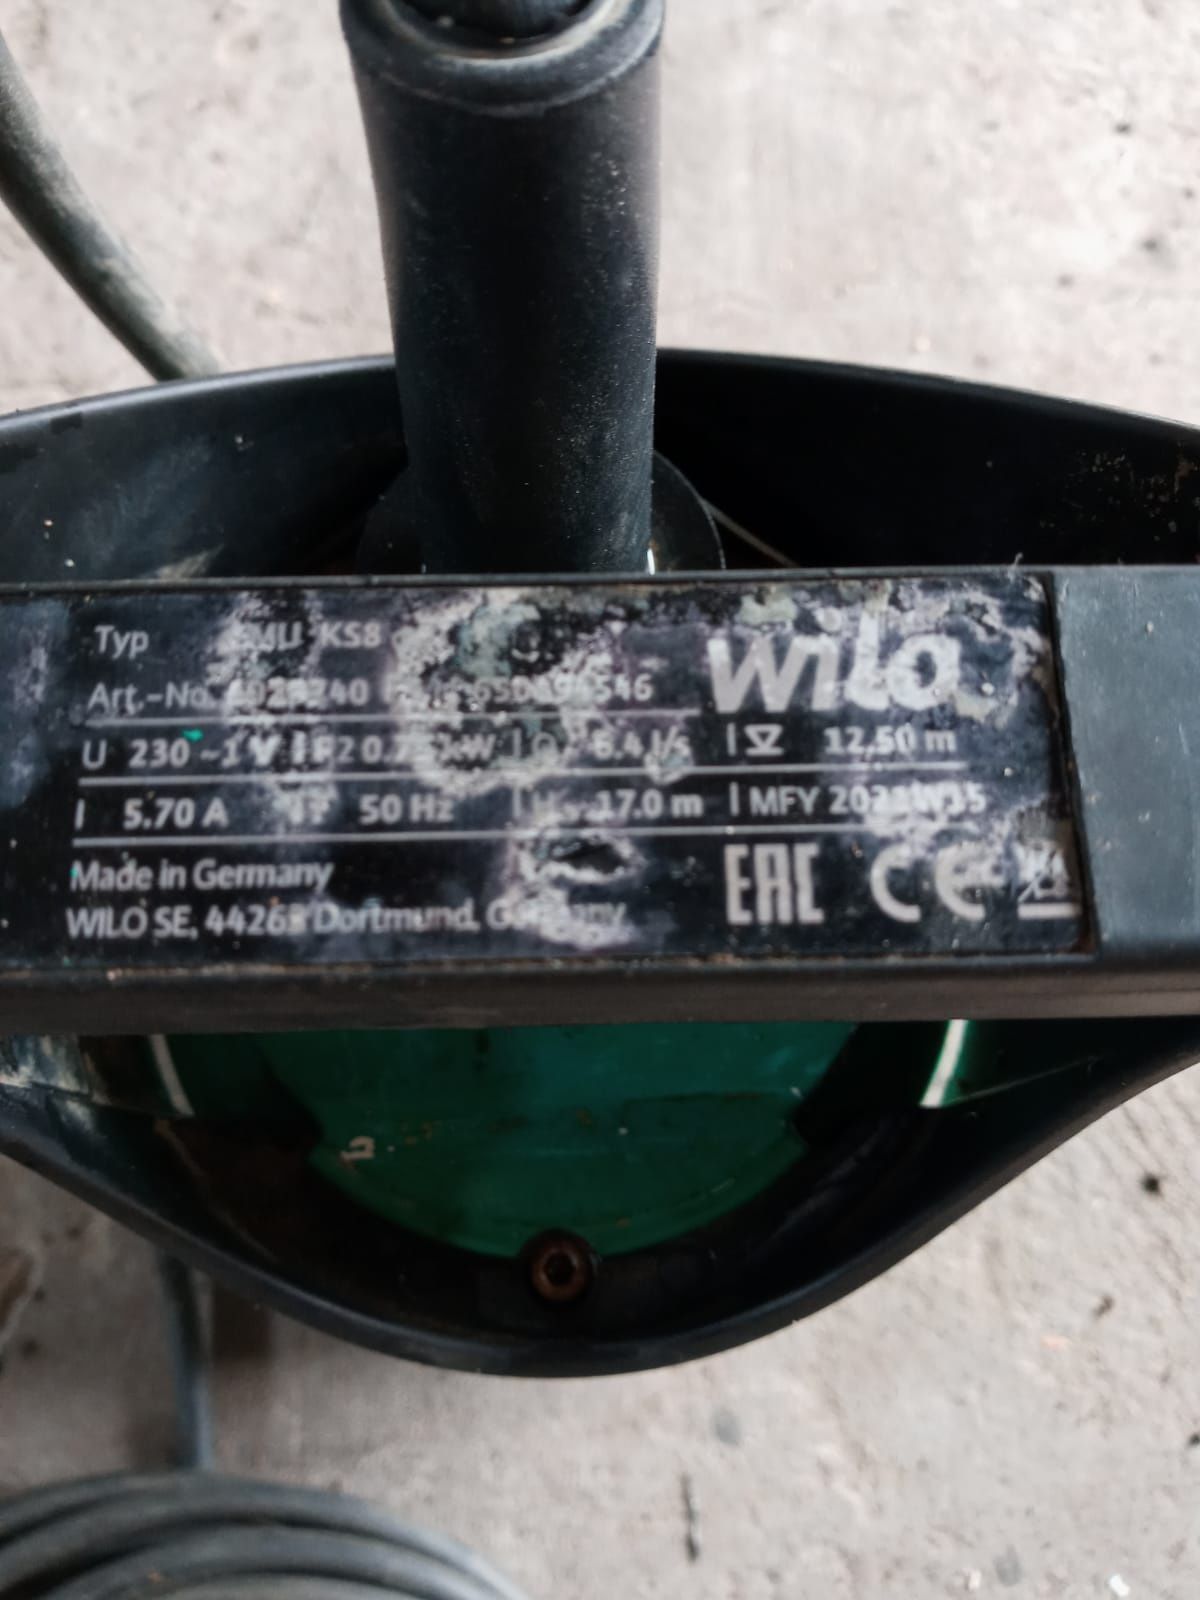 Pompa zatapialna WILO emu ks8 do brudnej wody.